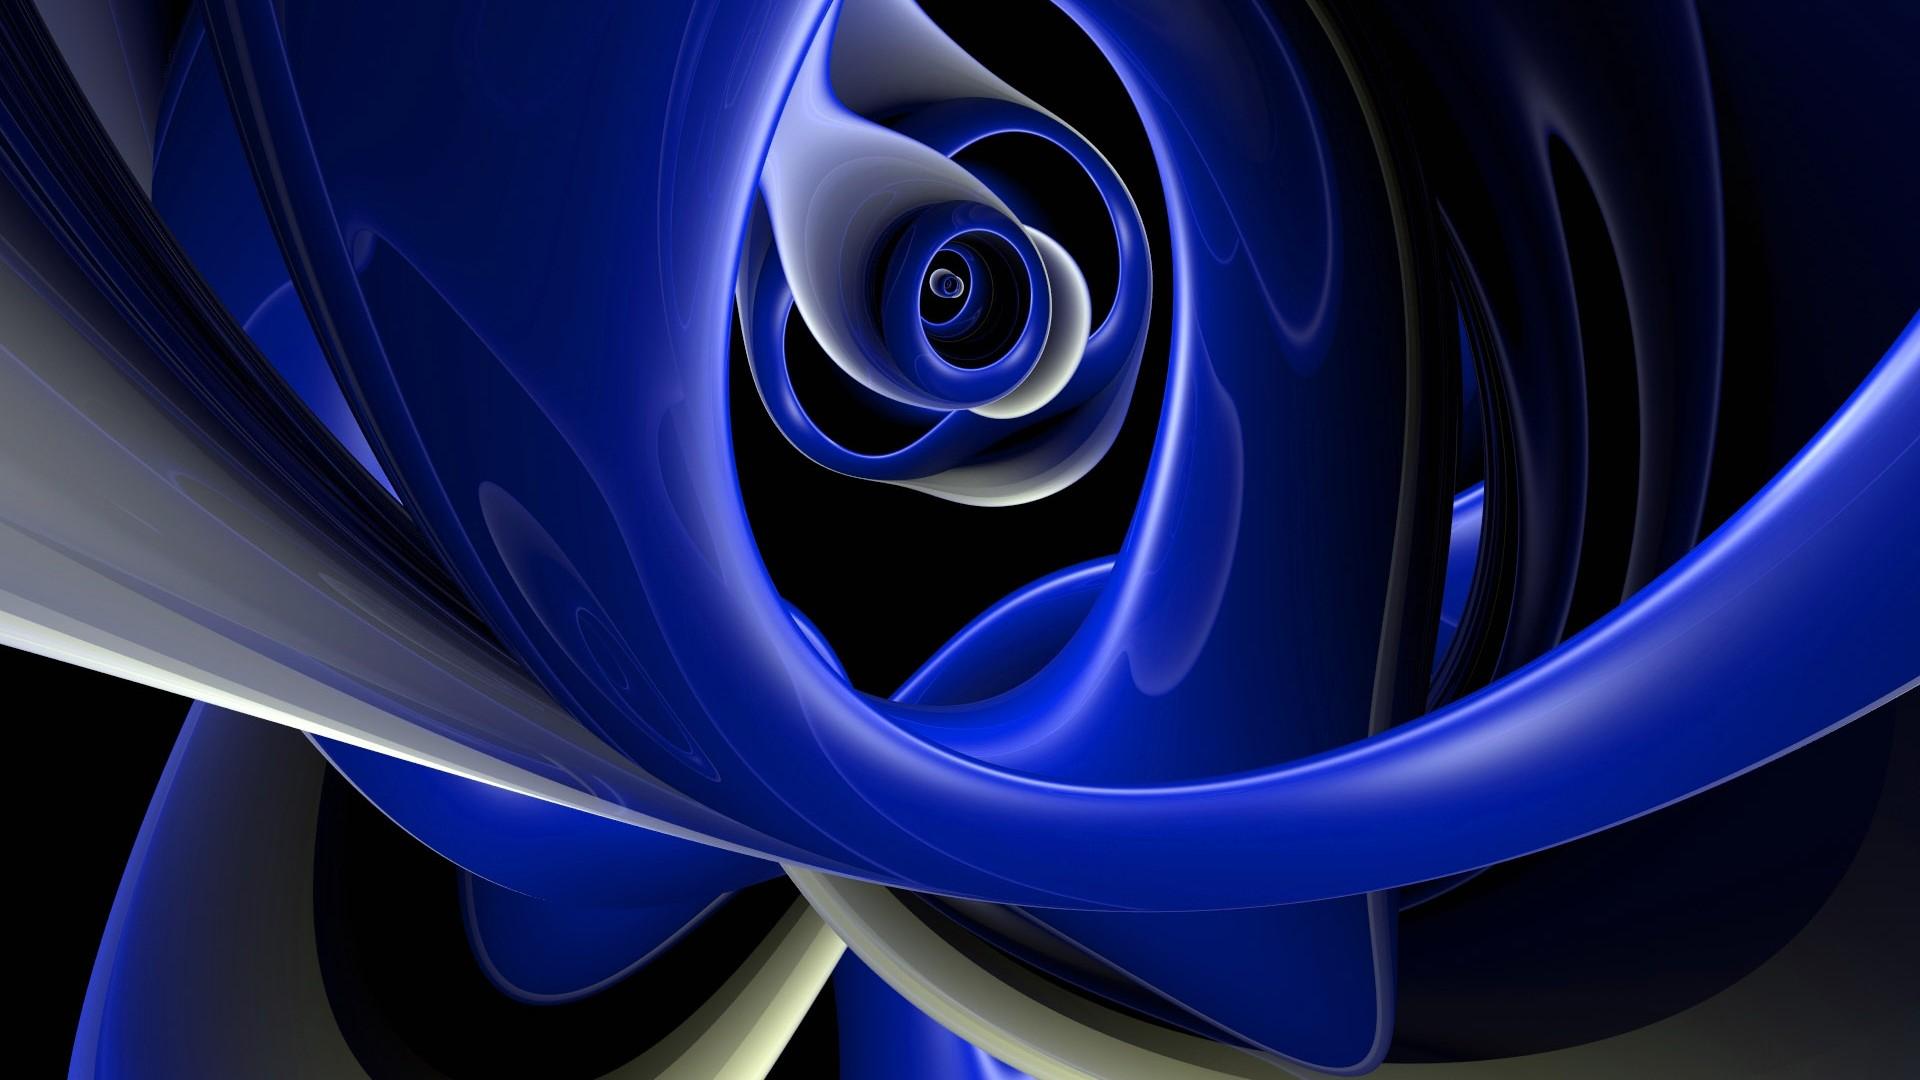 3D Abstract Blue Design widescreen wallpaper. Wide